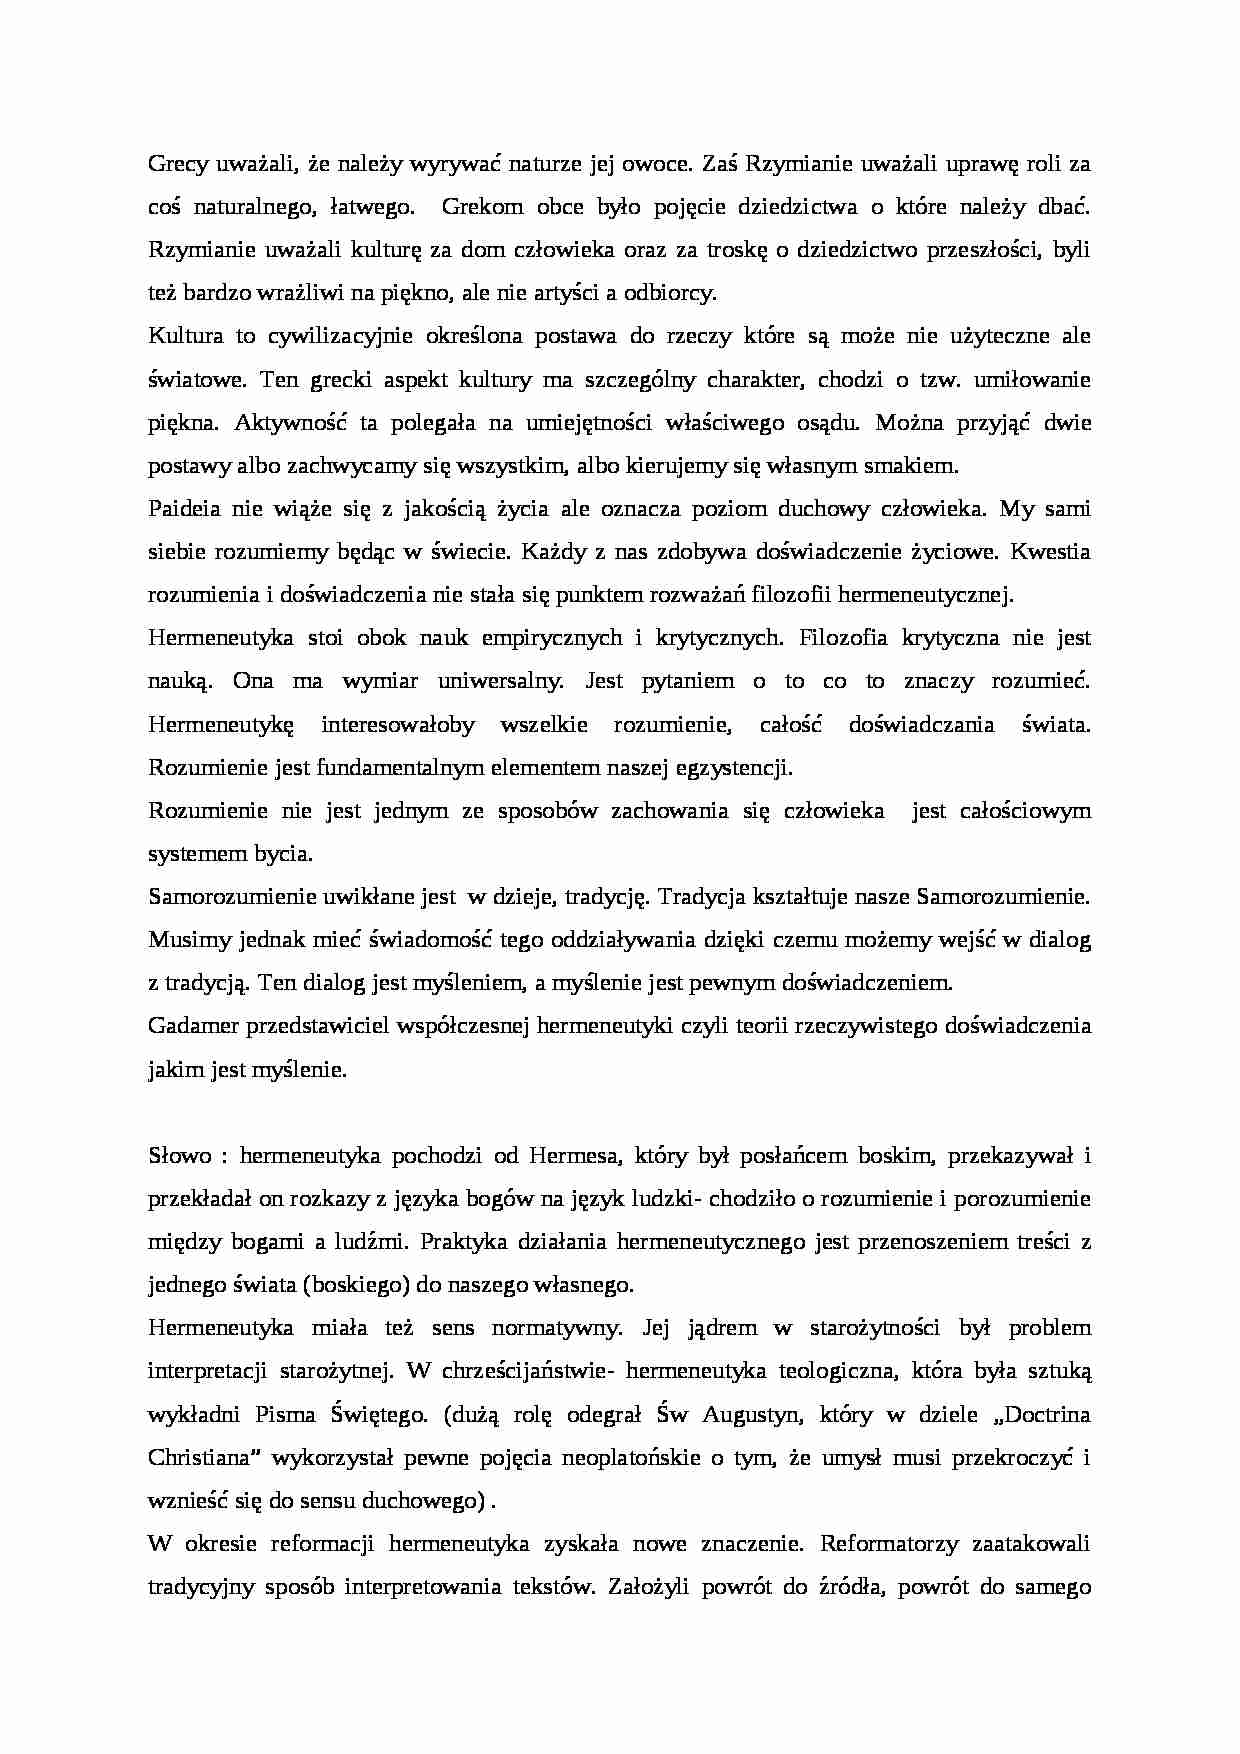 Filozoficzne podstawy pedagogiki - grecy  - strona 1